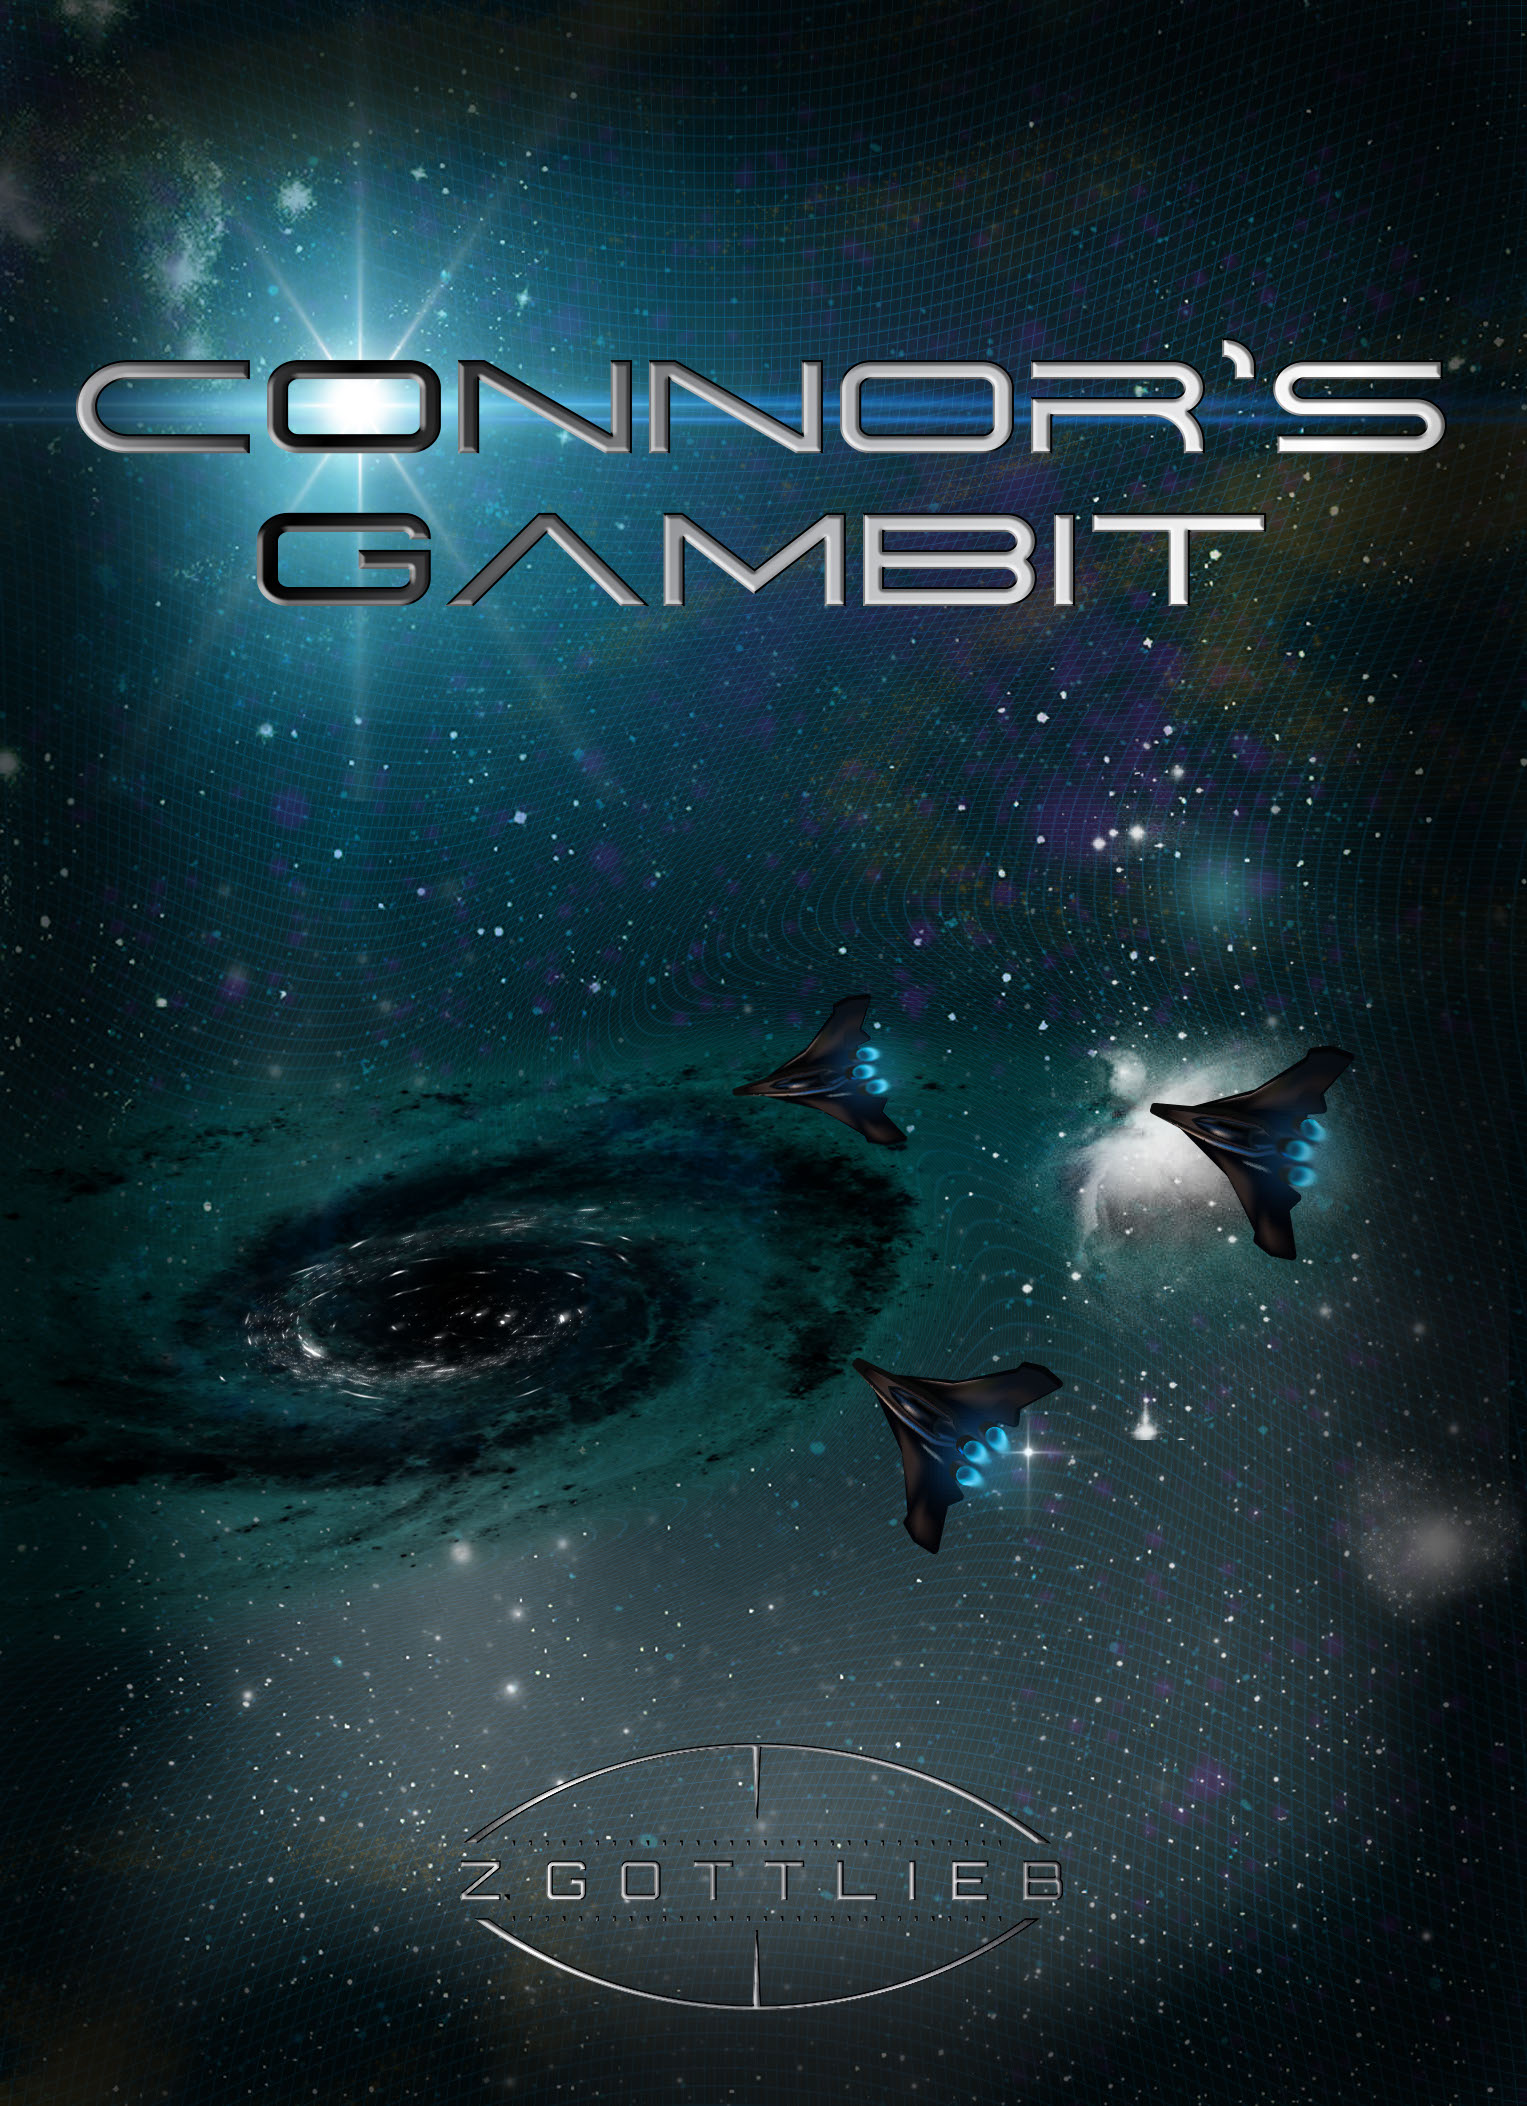 Connor’s Gambit by ZGottlieb